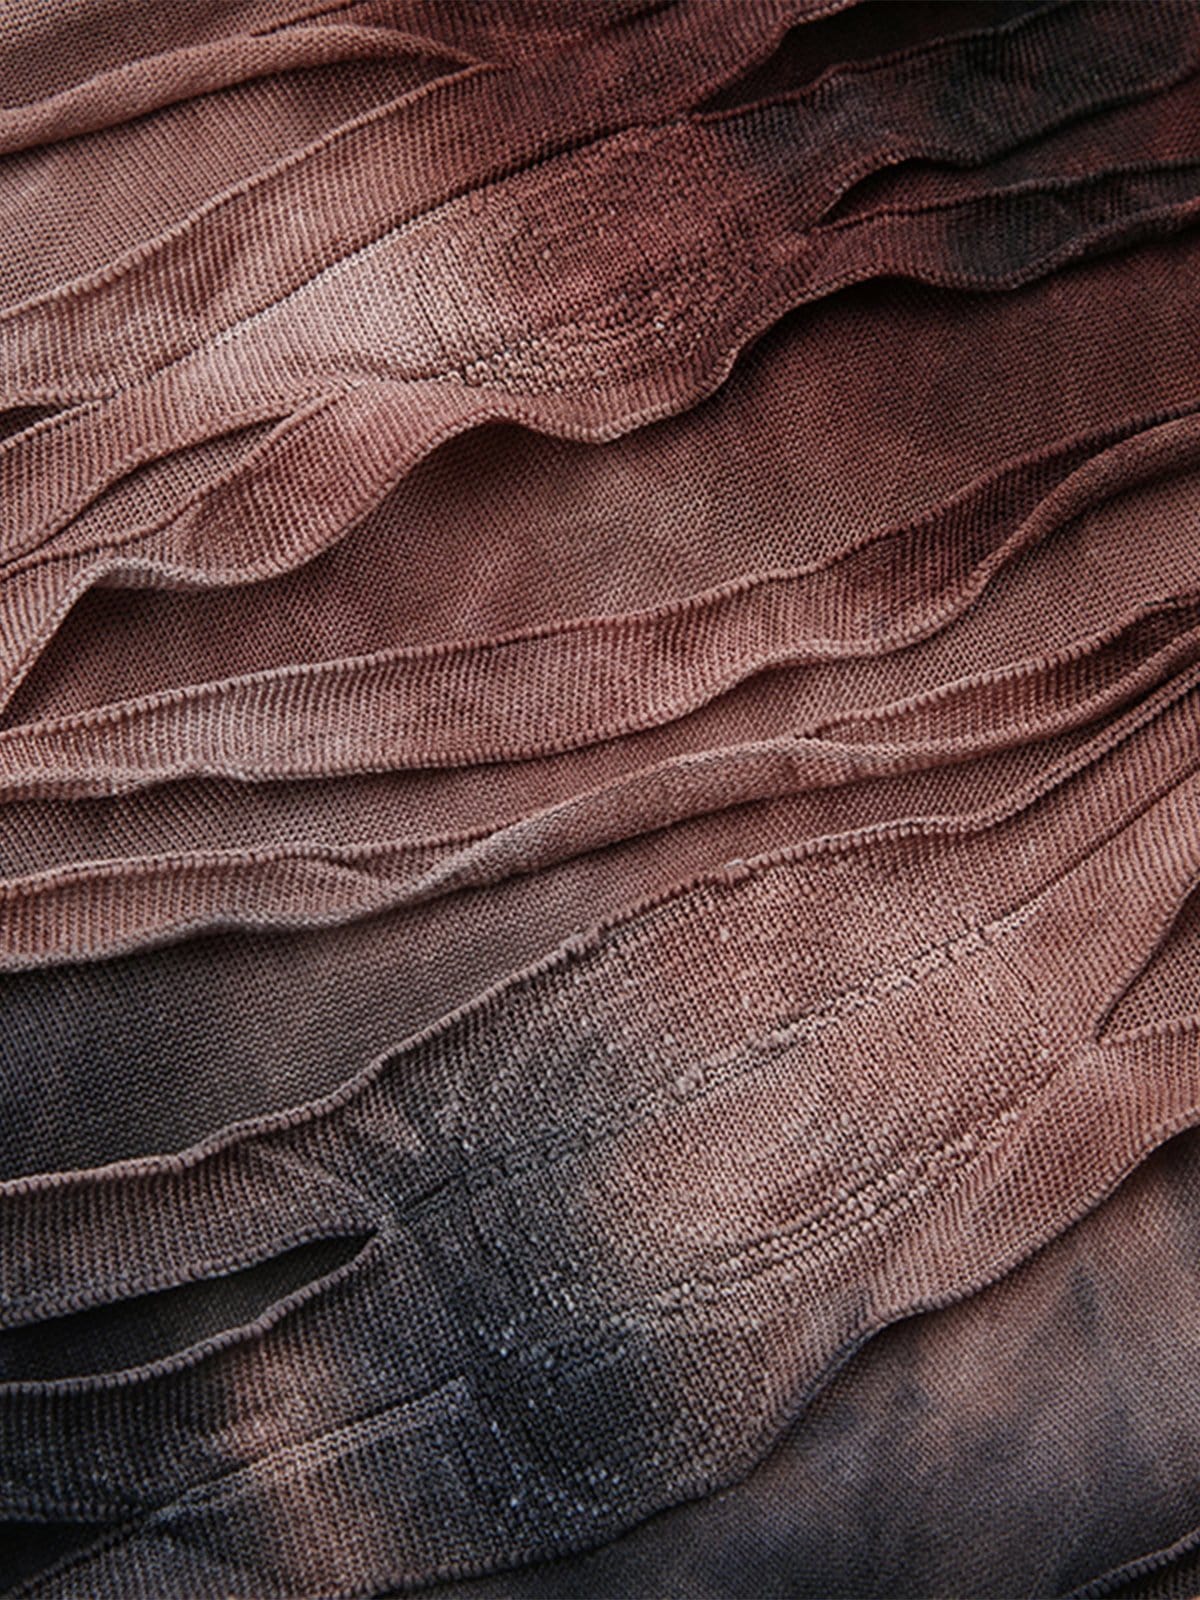 NEV Wilderness Style Tie-Dye Long Skirt